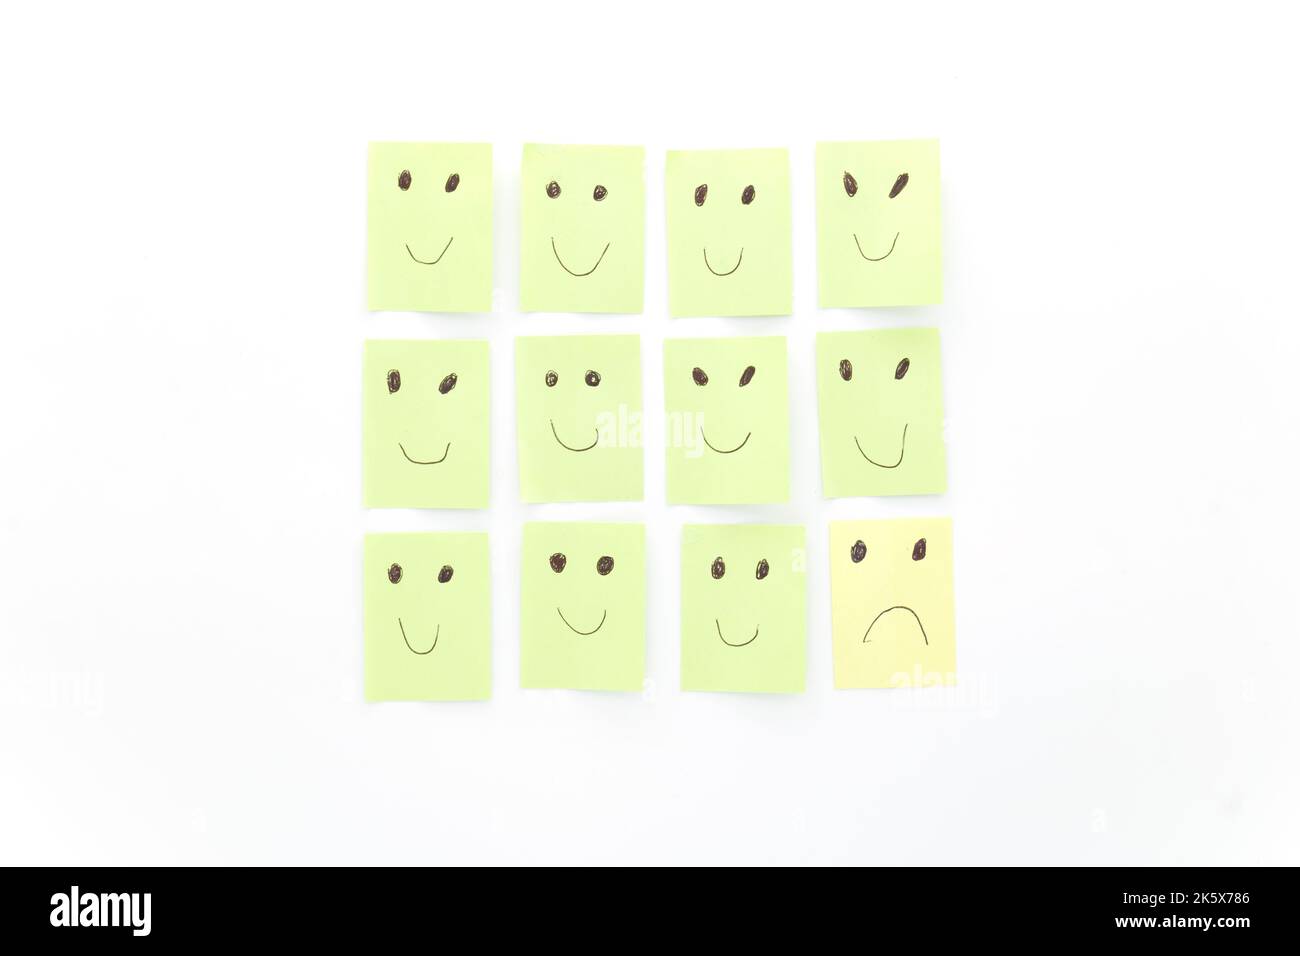 Immagine concettuale di essere triste tra gli altri felici. Soddisfatto, deluso. Note adesive verdi e gialle isolate su sfondo bianco. Foto Stock